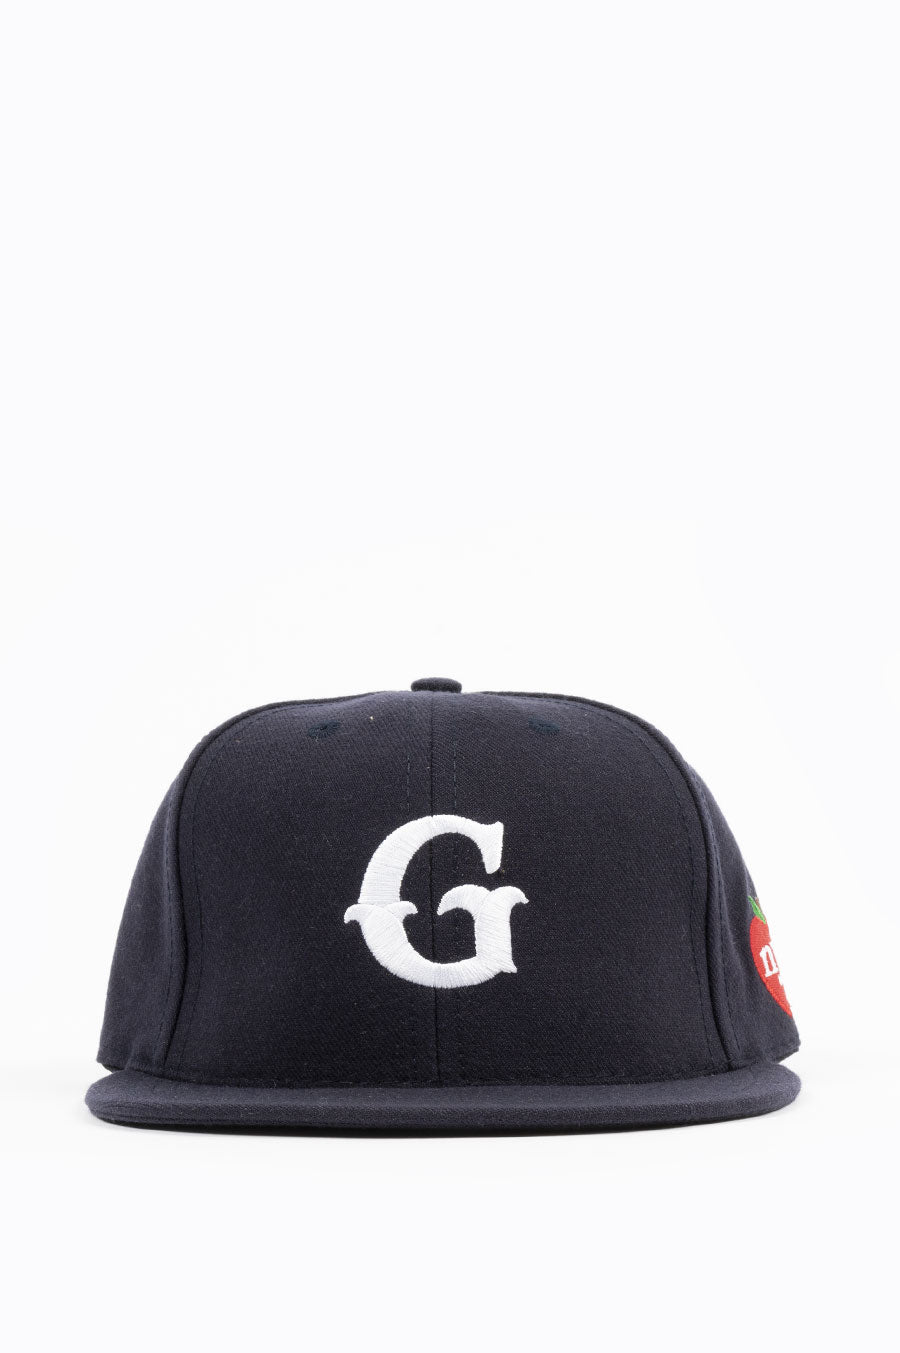 GARDENS & SEEDS G CAP BLENDS – NAVY NYC